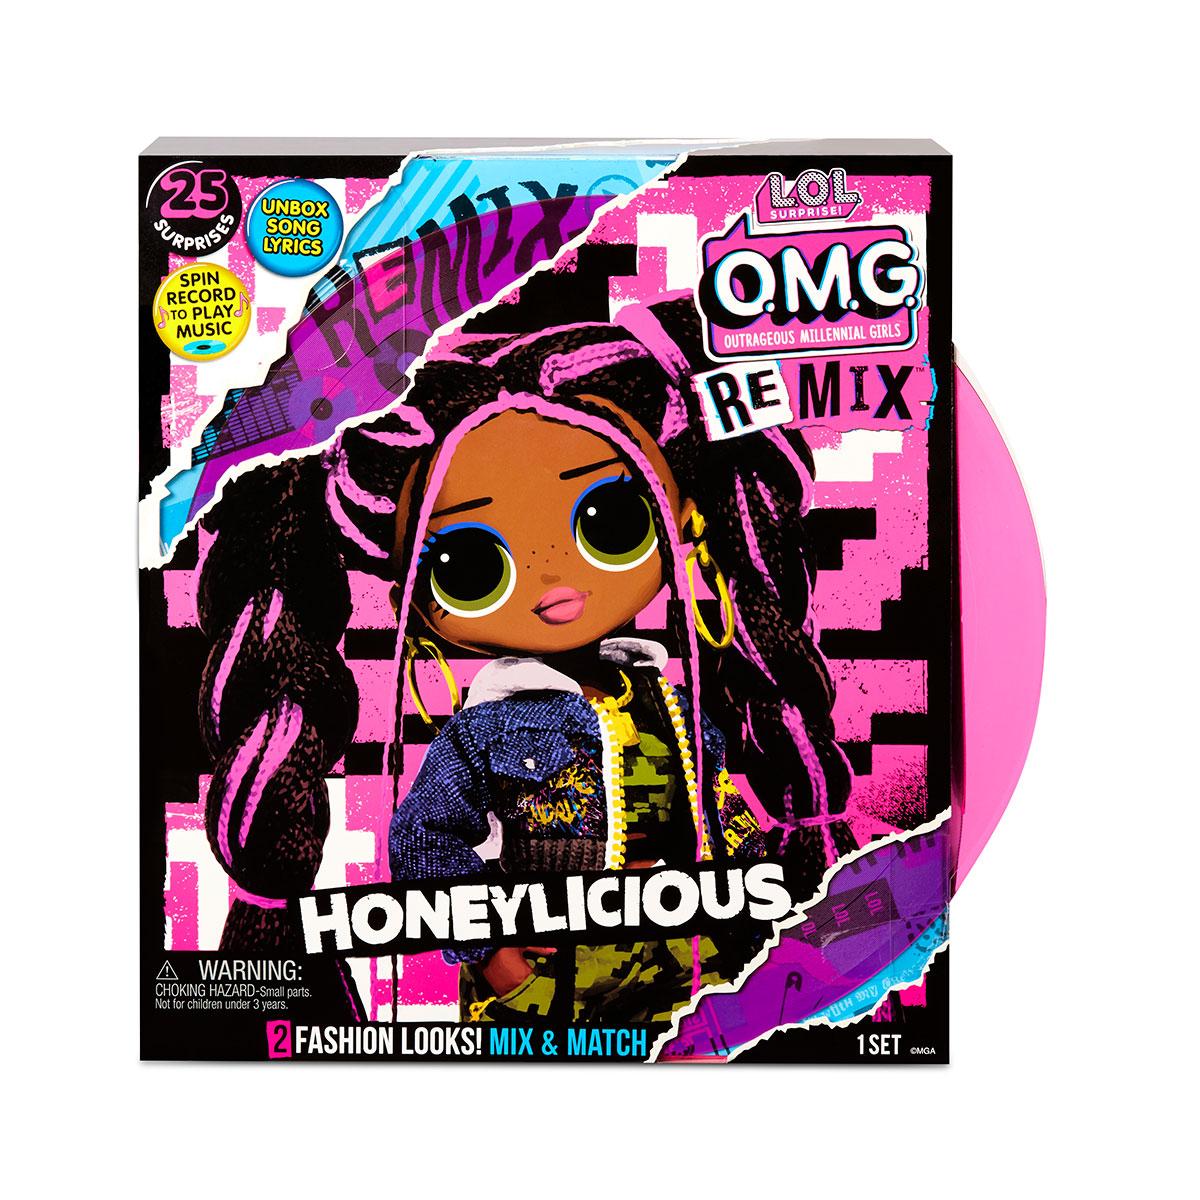 LOL OMG Remix Музыкальная Кукла ЛОЛ ОМГ Ремикс Милашка (Honeylicious), ЛОЛ Сюрприз